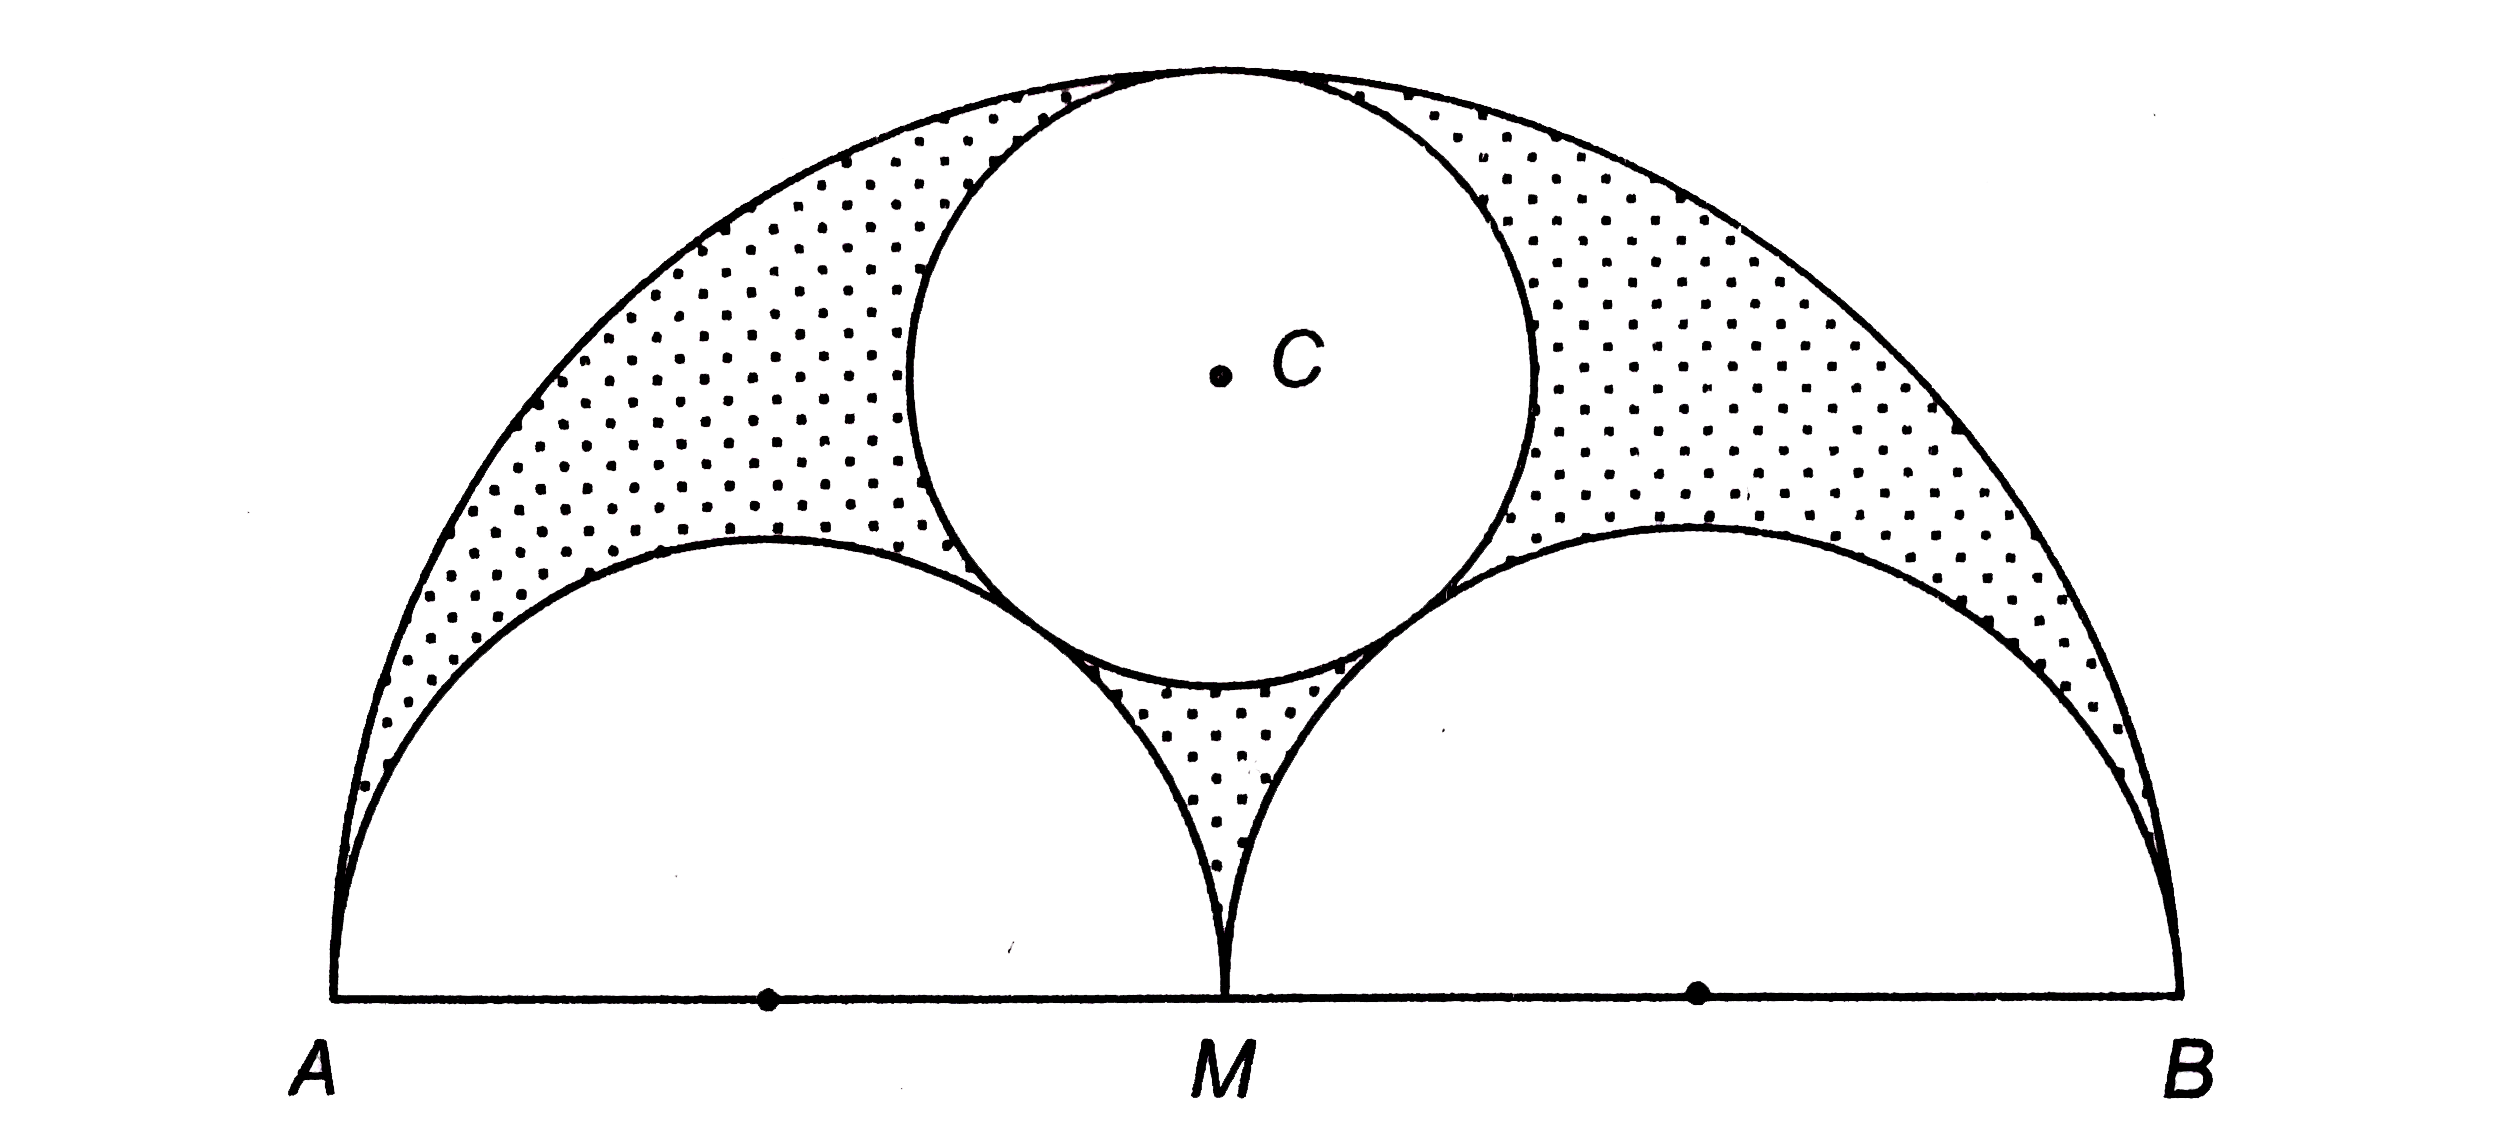 चित्र में, AB = 36 सेमी. तथा M,AB का मध्यबिन्दु है | AB, AM तथा MB को व्यास लेकर तीन अर्धवृत्त खींचे गए हैं | केन्द्र C वाला एक वृत्त तीनों अर्धवृत्तों को स्पर्श करता है | छायांकित भाग का क्षेत्रफल ज्ञात कीजिए |